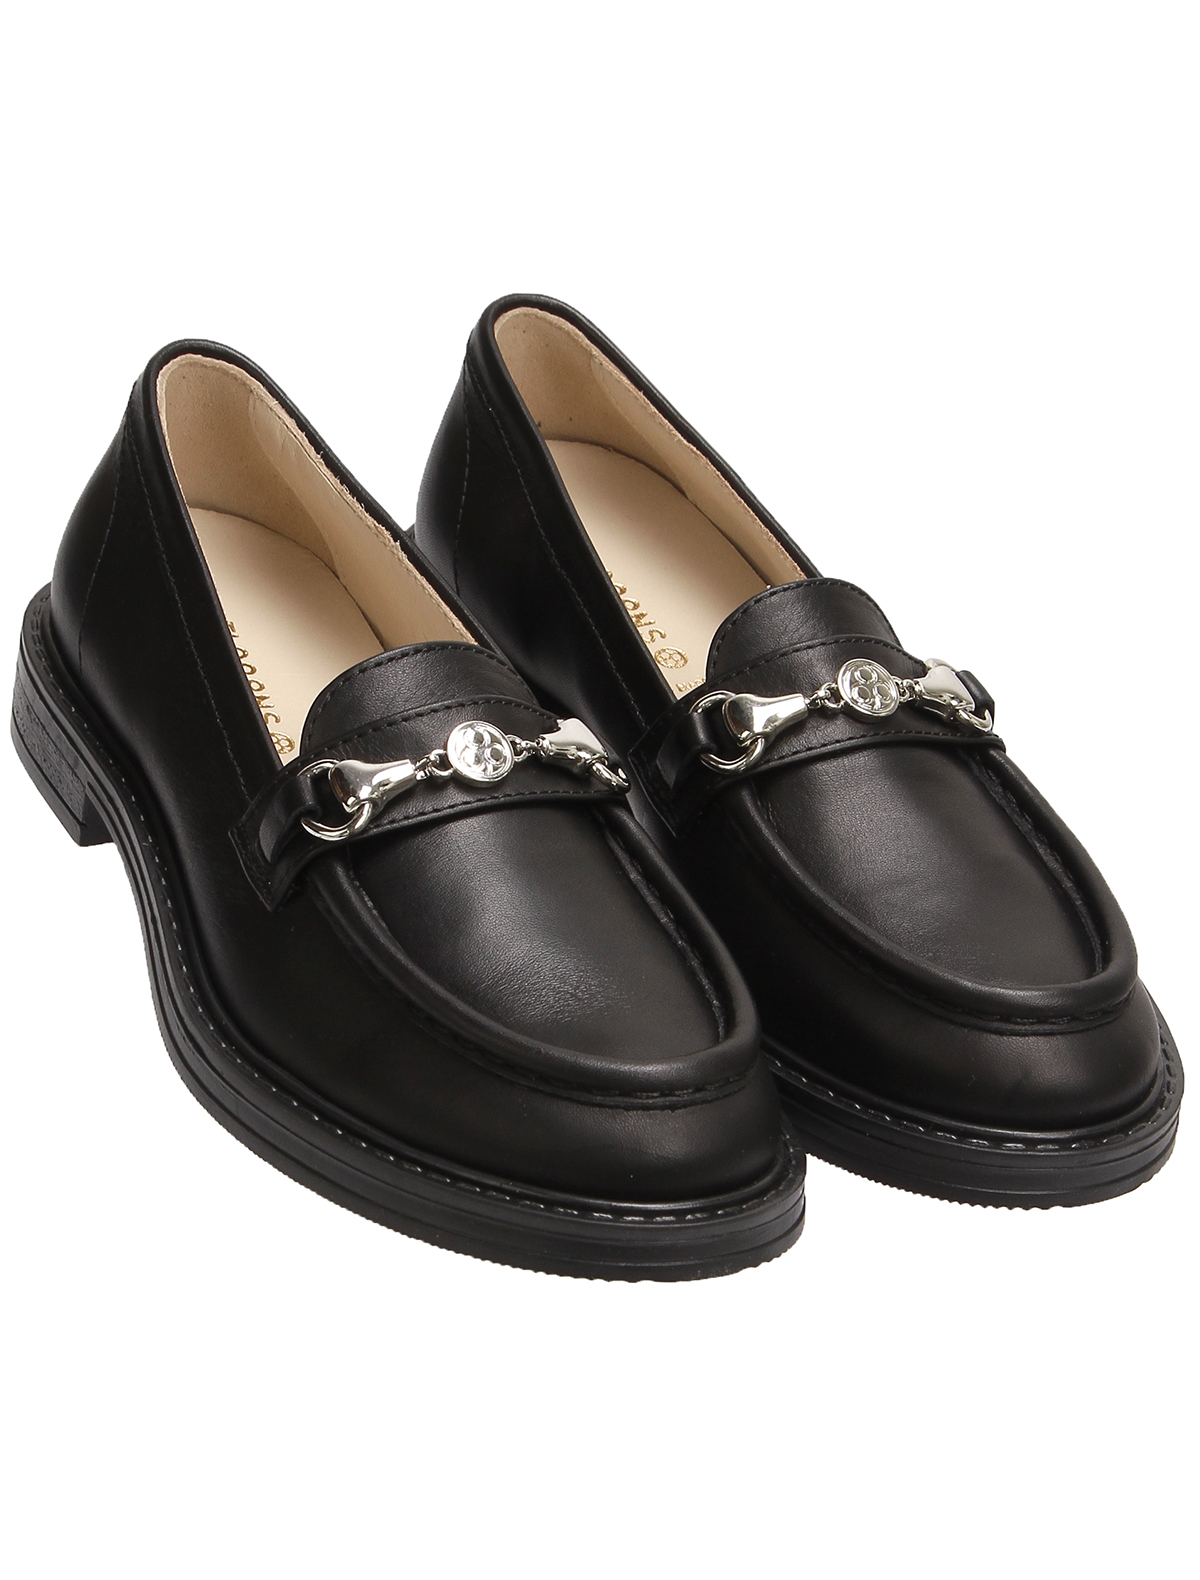 Туфли Florens 2495659, цвет черный, размер 37